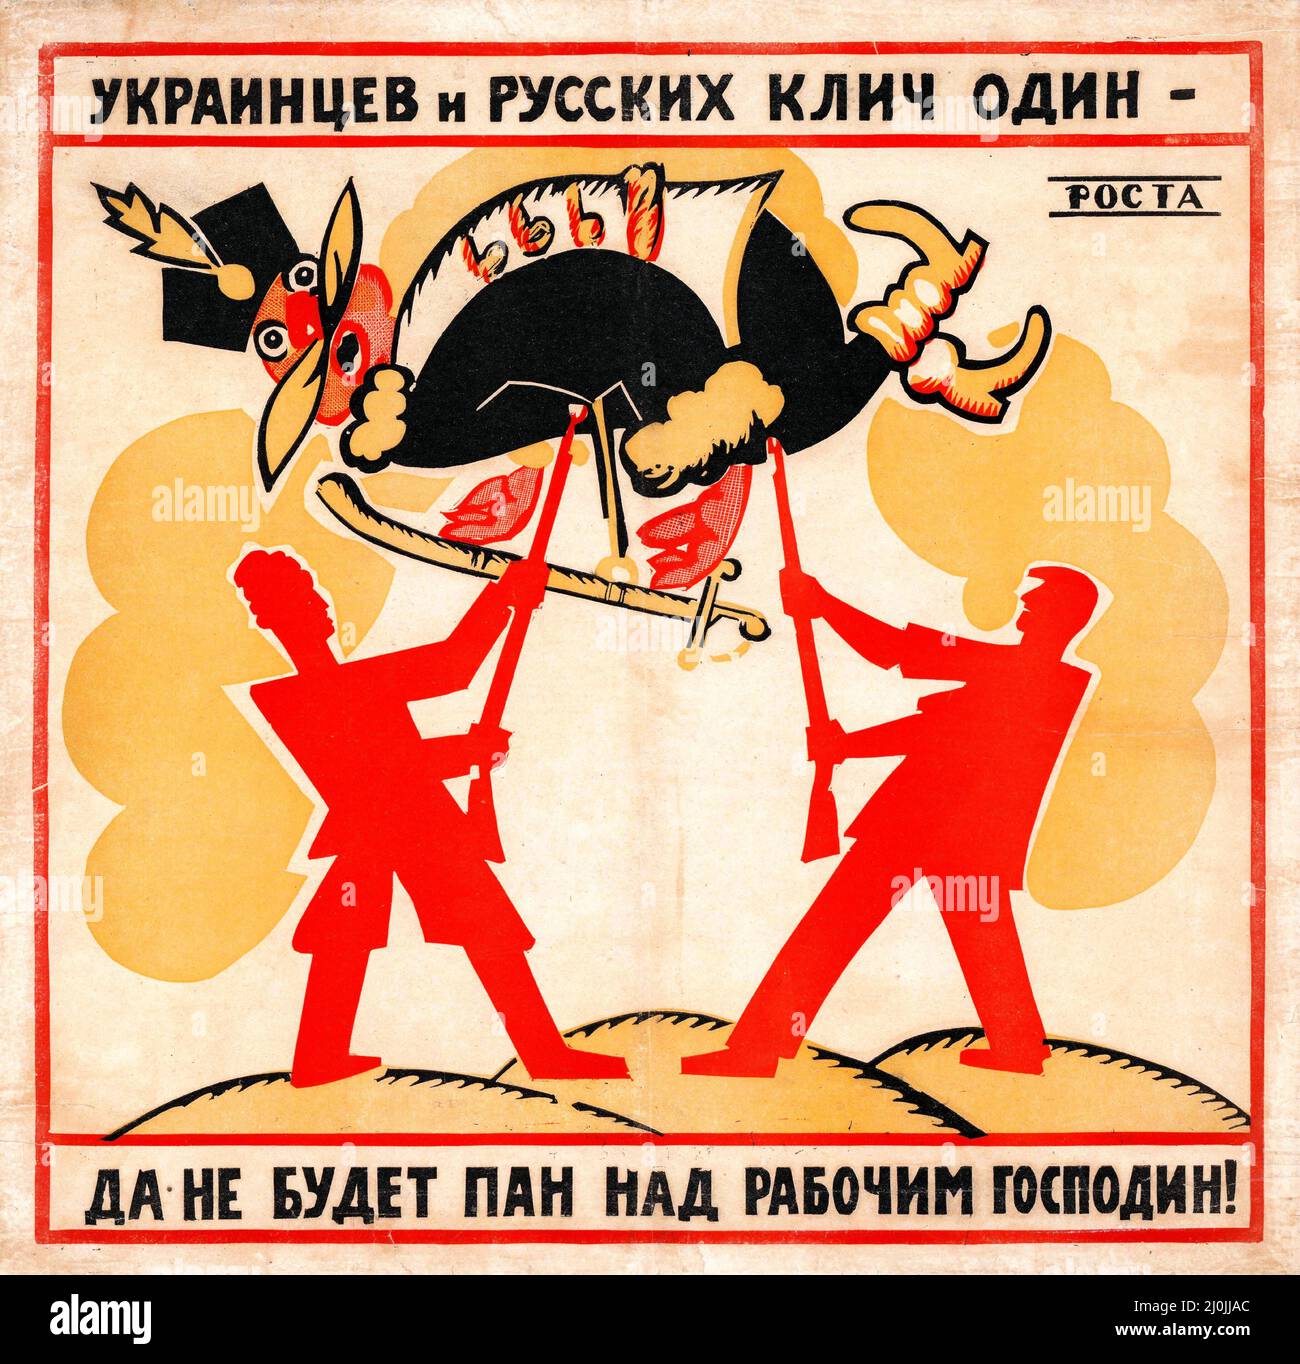 Russische Propaganda - Fenster der ROSTA (Fenster der Satire ROSTA). Ukrainer und Russen haben einen Schrei - es soll keinen Meister über den Arbeiter geben! 1920 Stockfoto